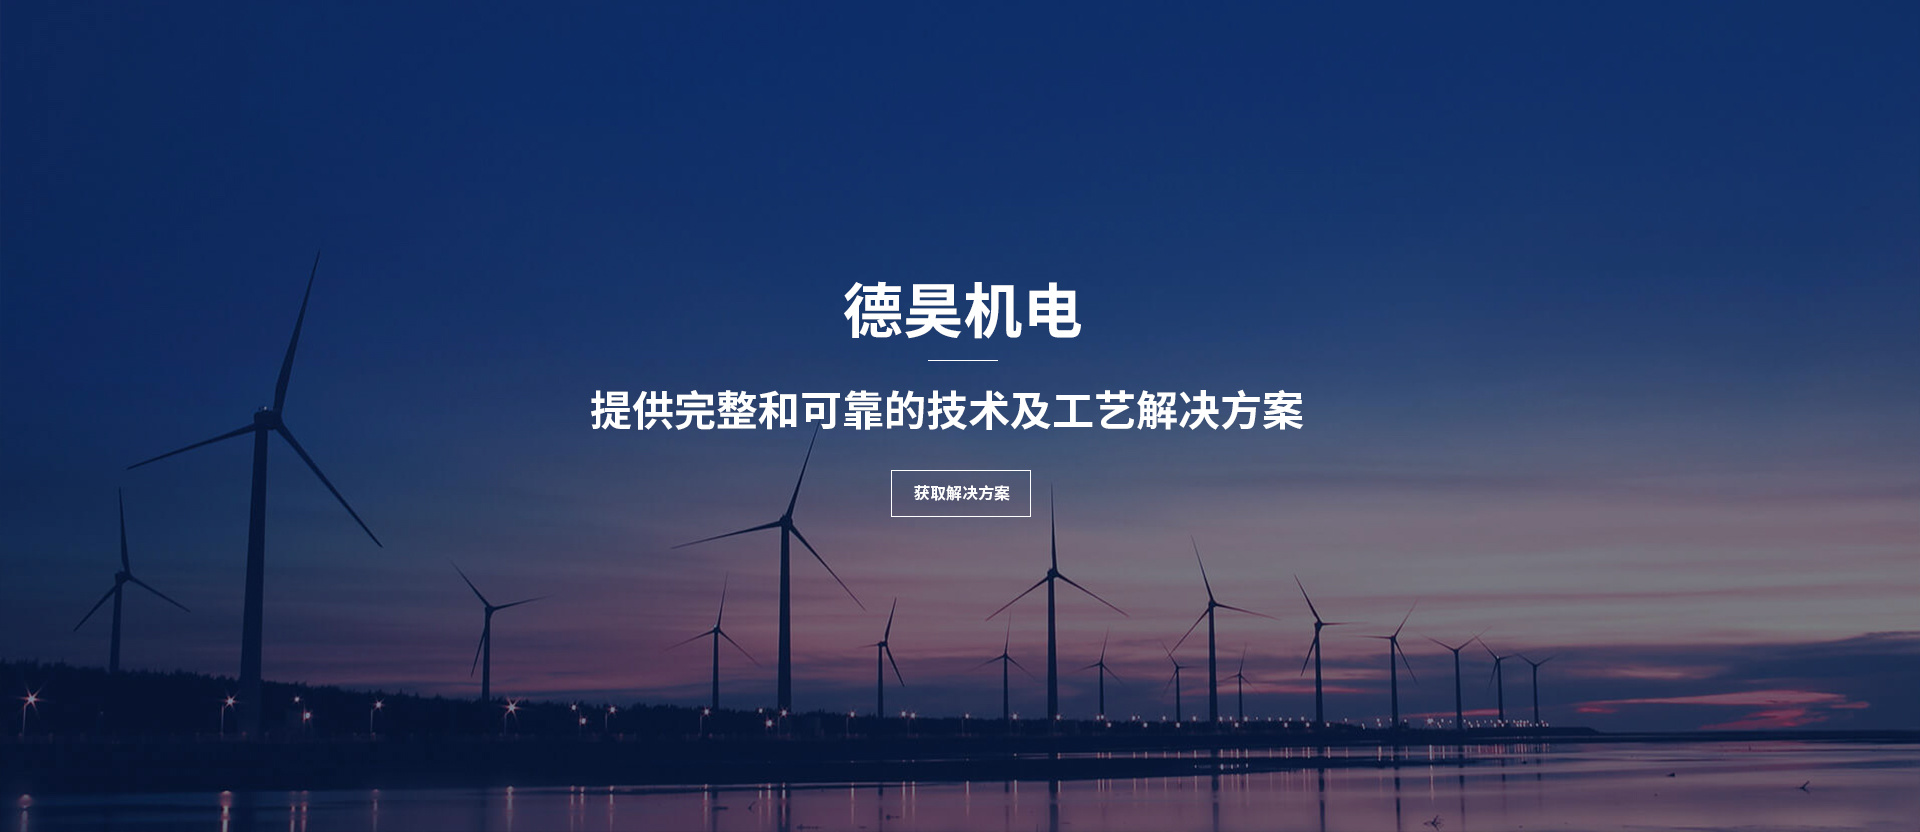 上海德昊机电设备有限公司